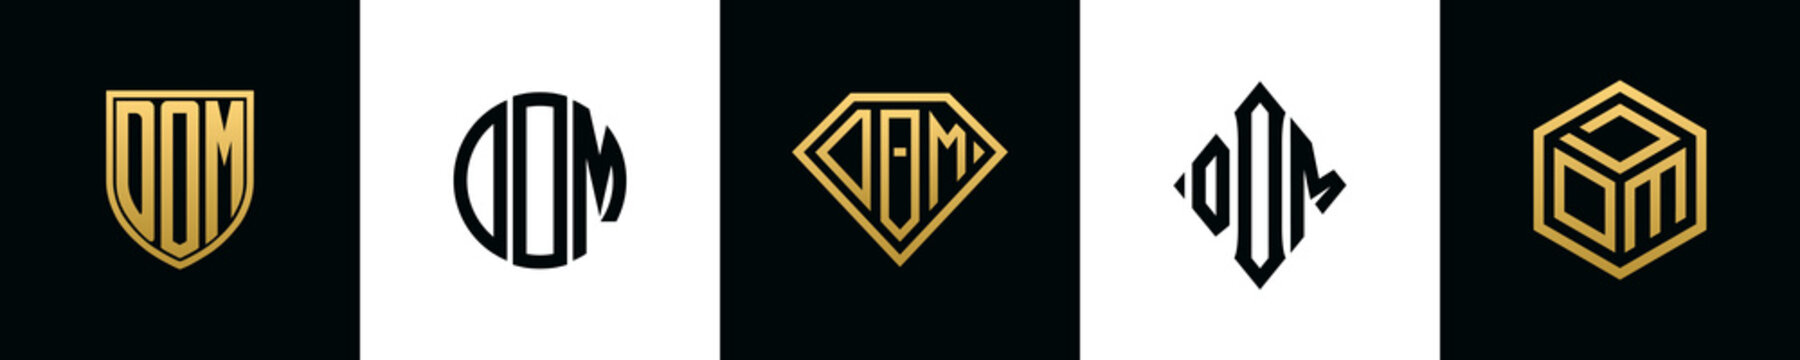 Initial letters DOM logo designs Bundle